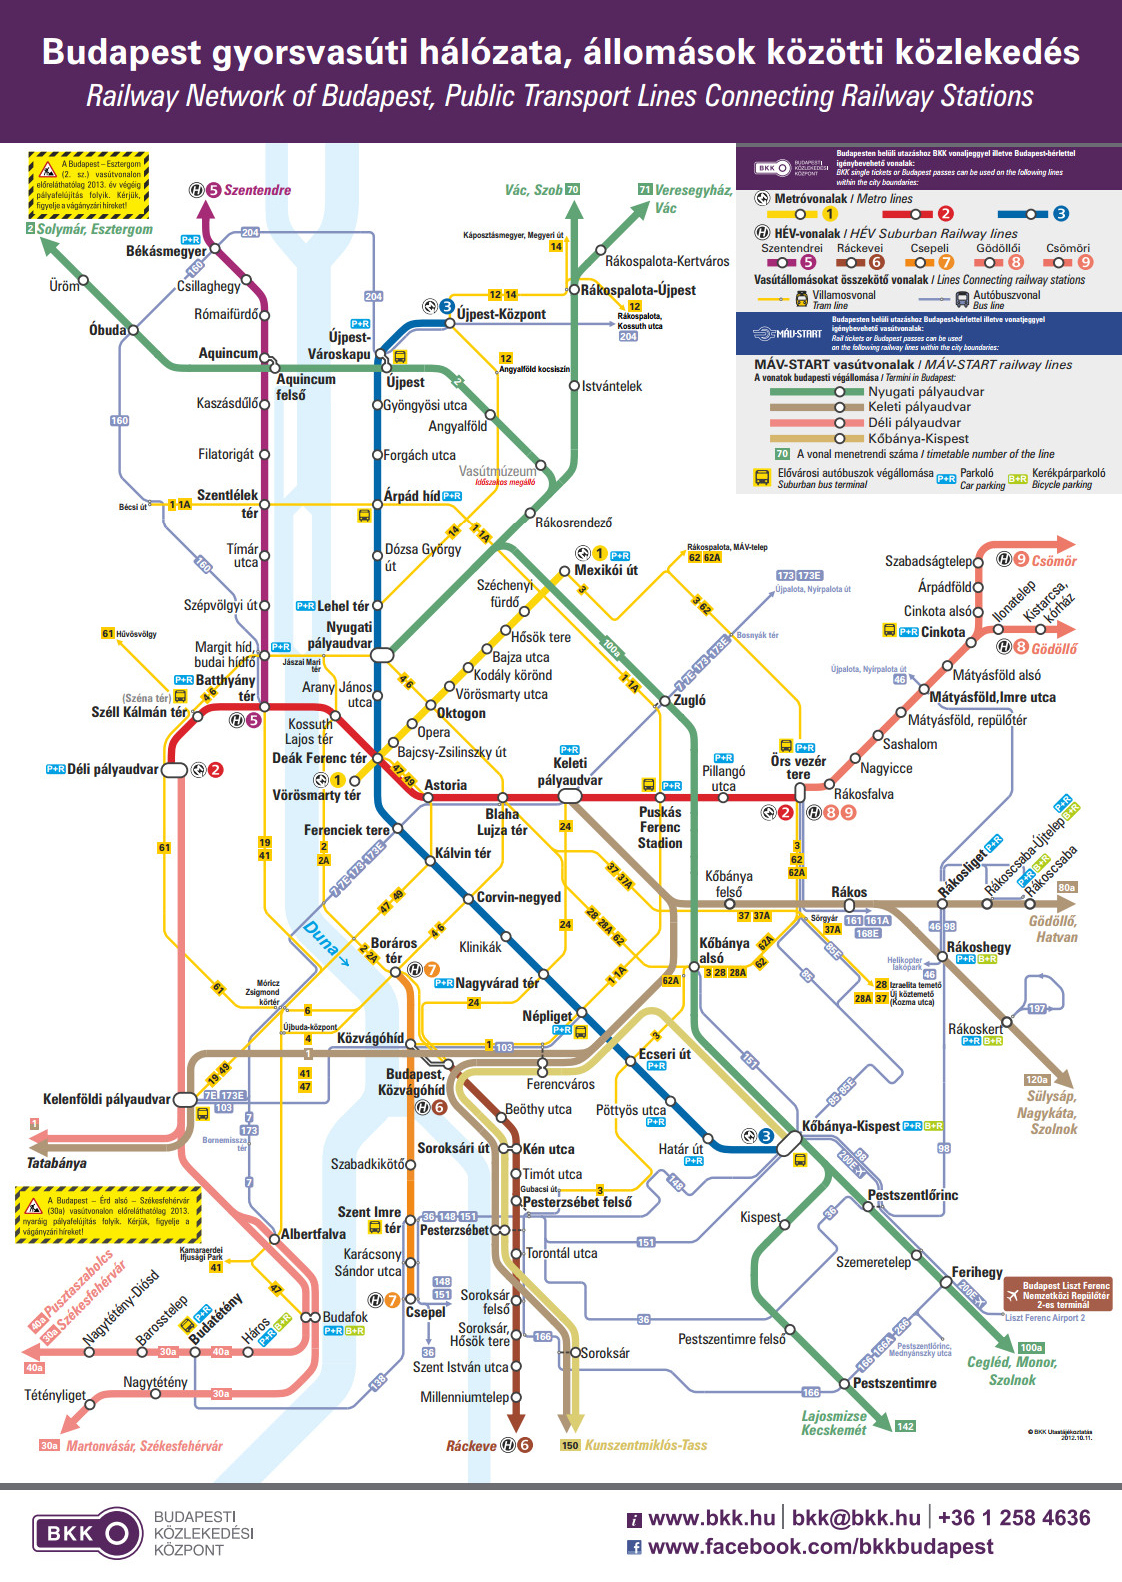 villamos térkép budapest IHO   Közút   Budapesti spagetti BKK módra villamos térkép budapest